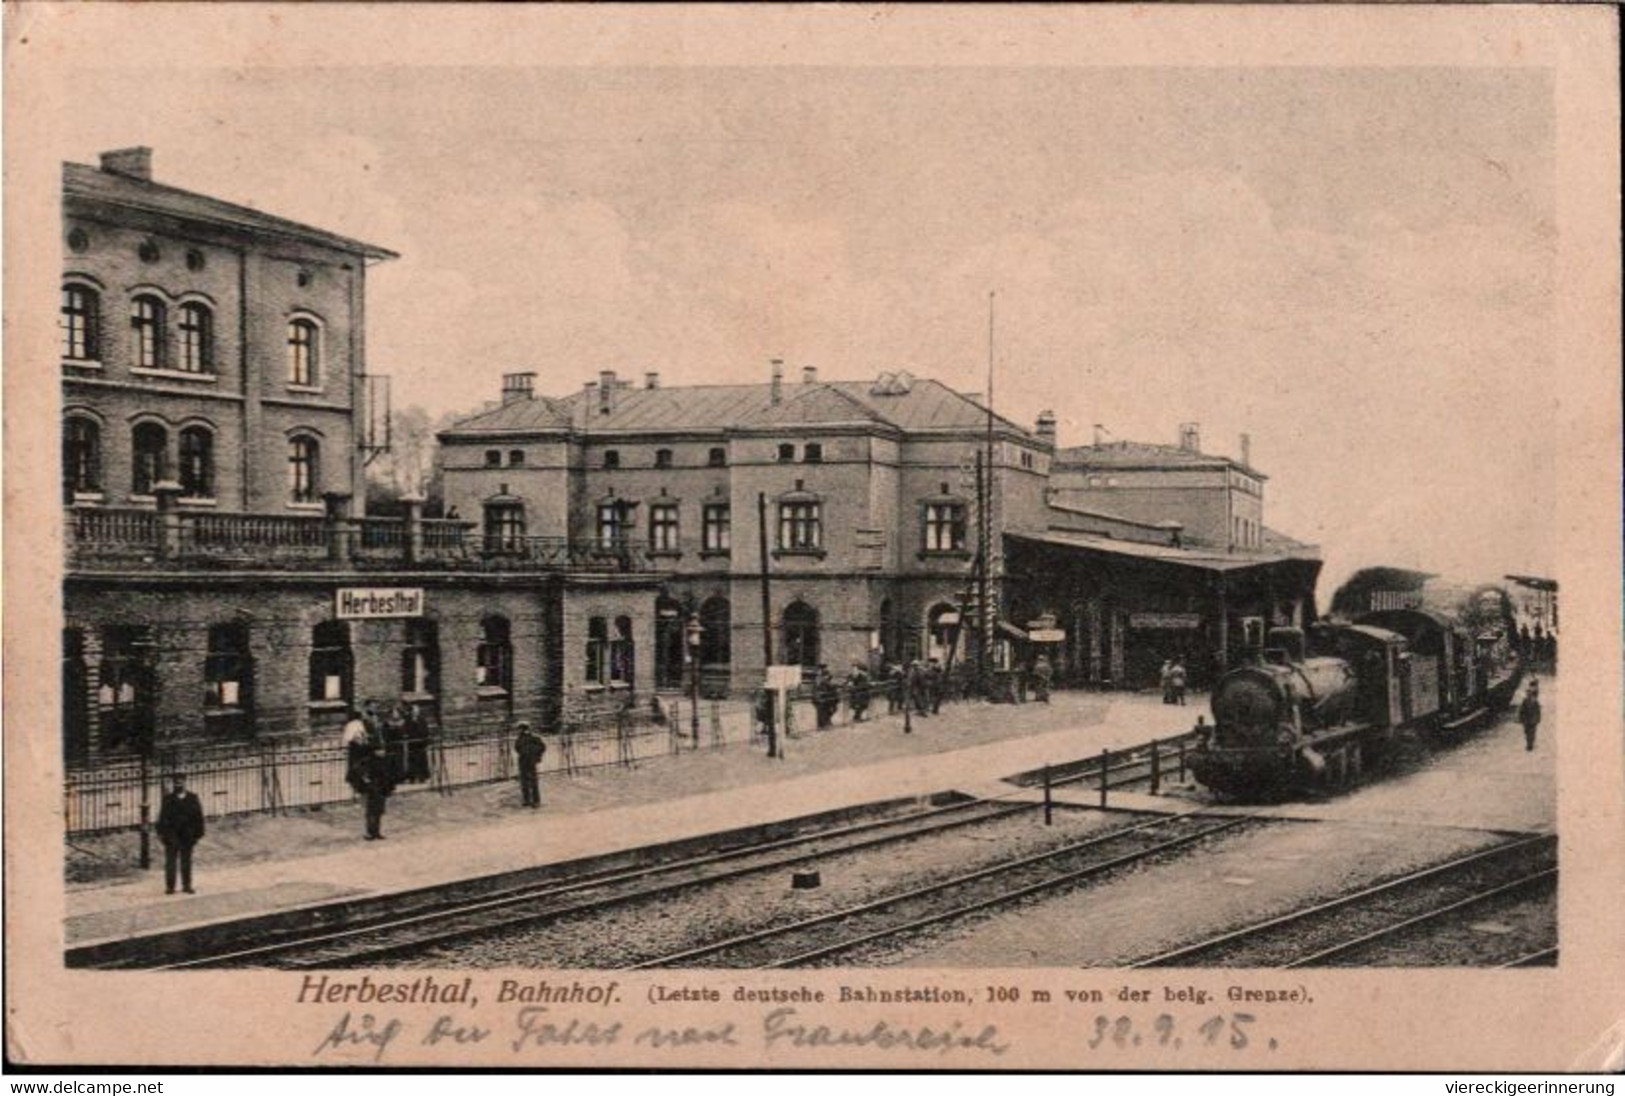 !  Ansichtskarte Herbesthal, Bahnhof Gare Grenze, Dampflok, Eisenbahn, Feldpost 1915, Postkontrolle Stempel Eupen, Greiz - Stations With Trains